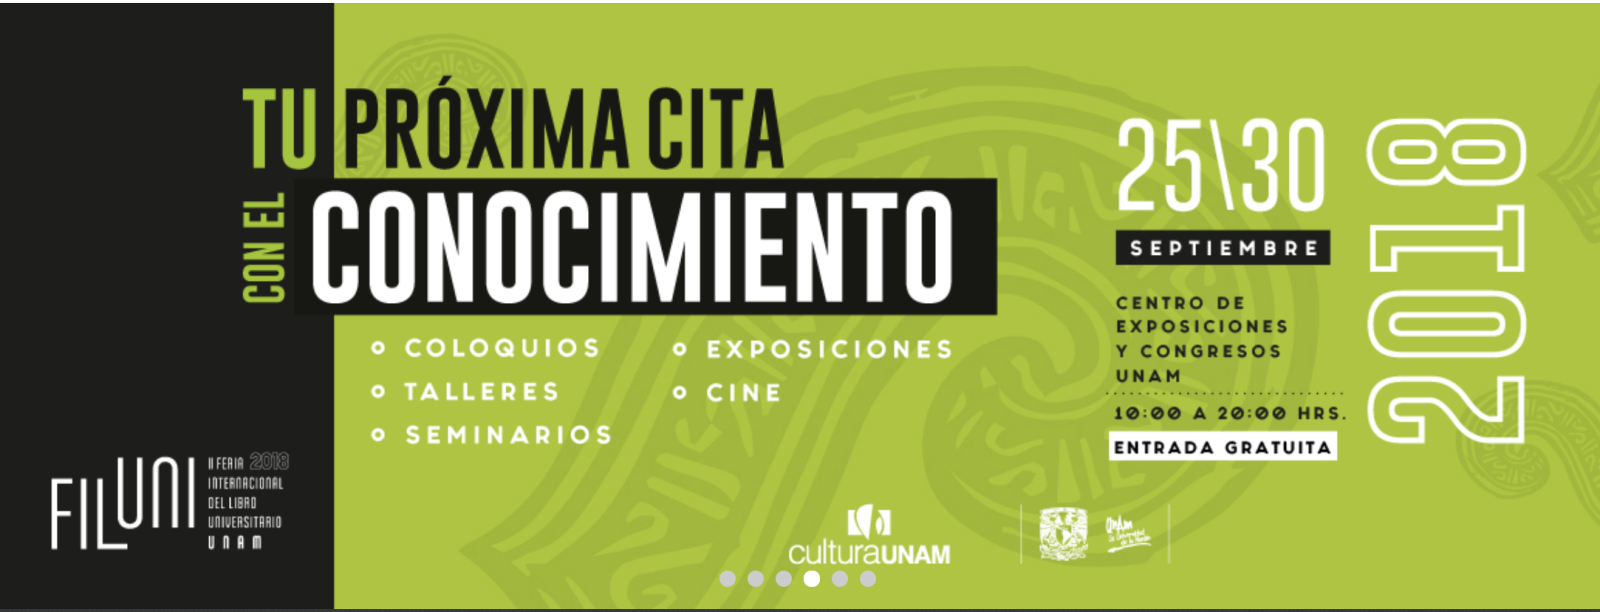 43 editoriales de universidades y centros de investigación españoles participan en la II Feria Internacional del Libro Universitario